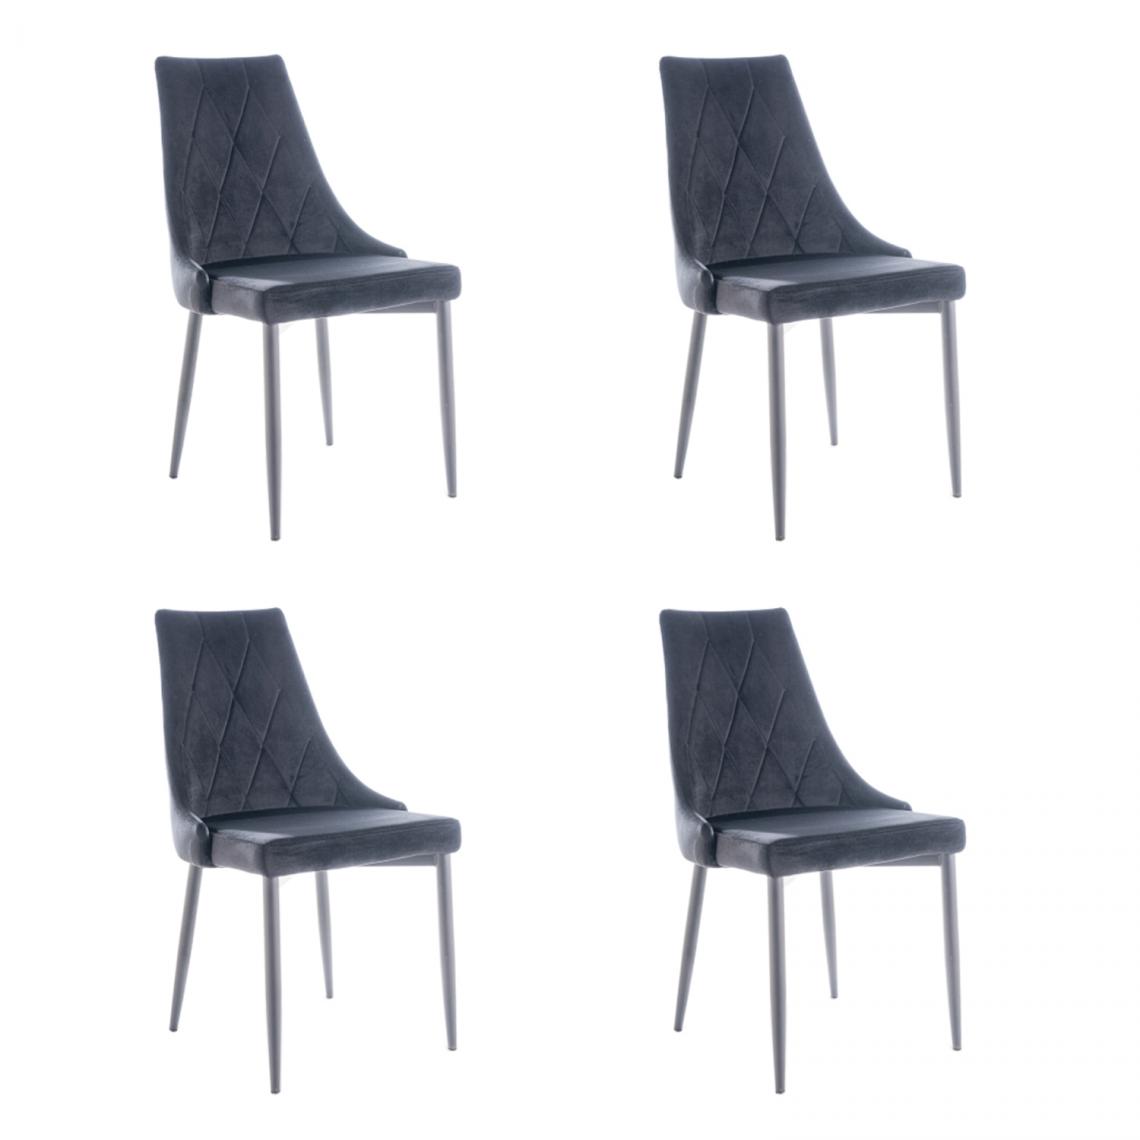 Hucoco - MELLEN - Lot de 4 chaises en tissu velouté - Style oriental - 88x46x46cm - Structure en métal - Gris - Chaises